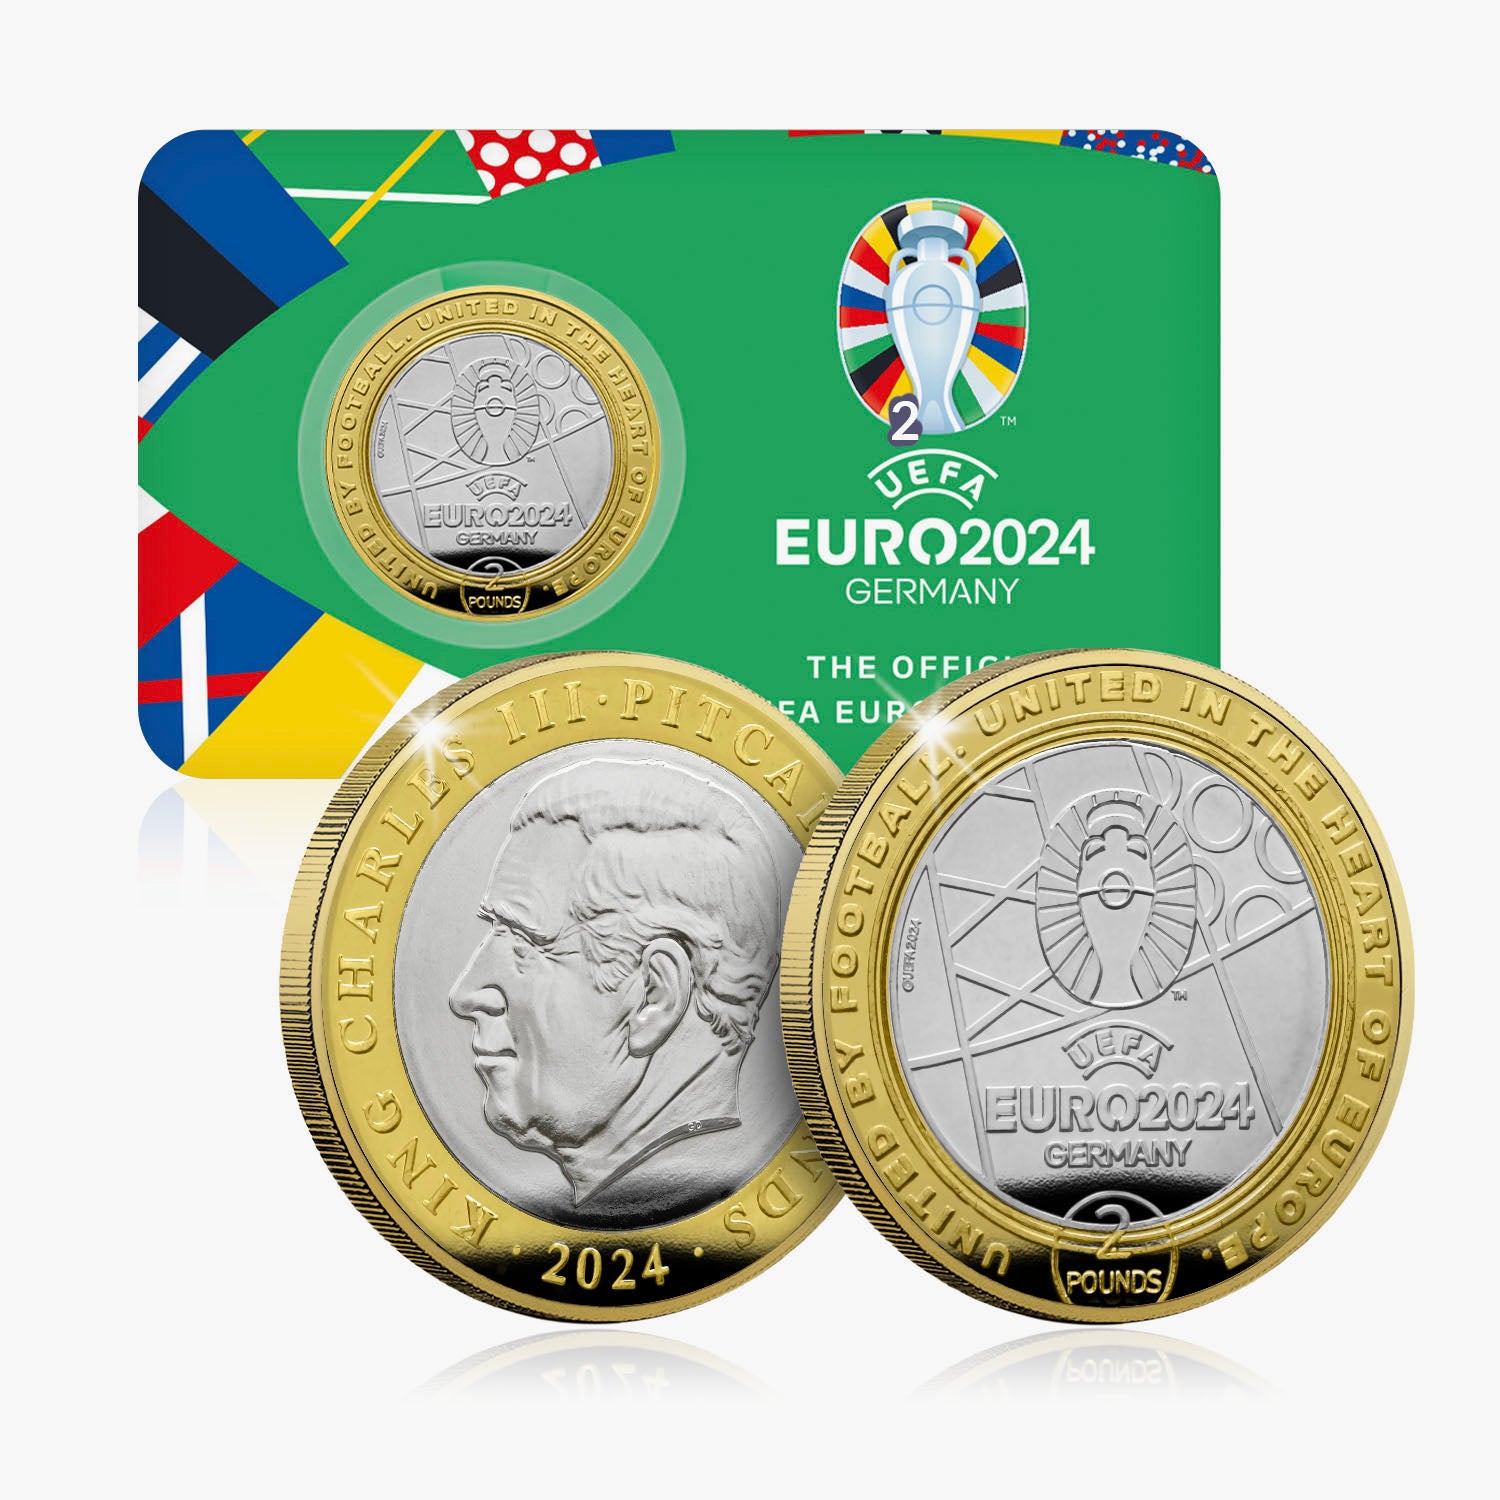 Official UEFA EURO 2024 £2 Coin